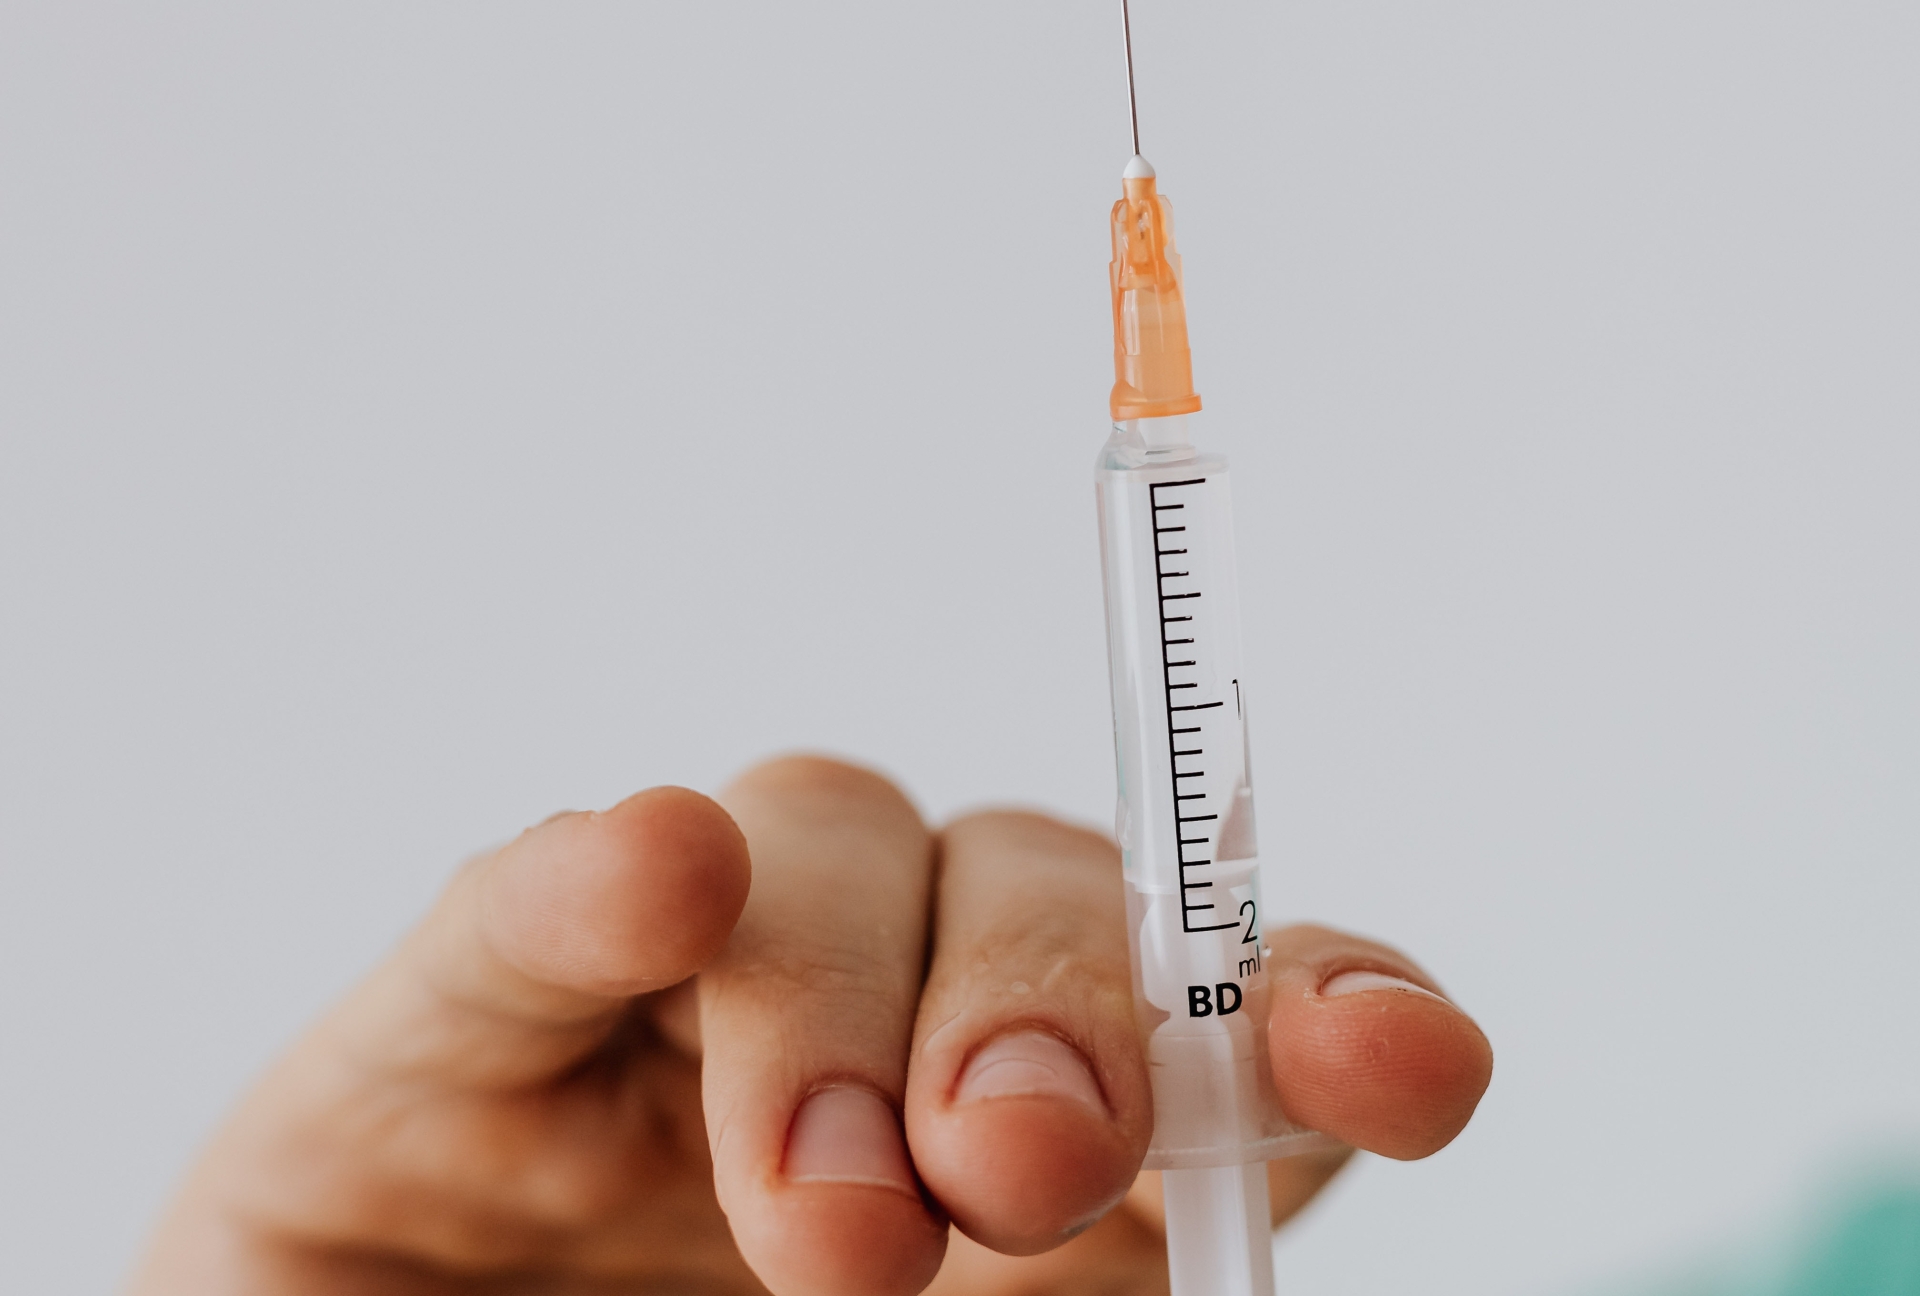 Les plus de 18 ans éligibles à la 3e dose de vaccin